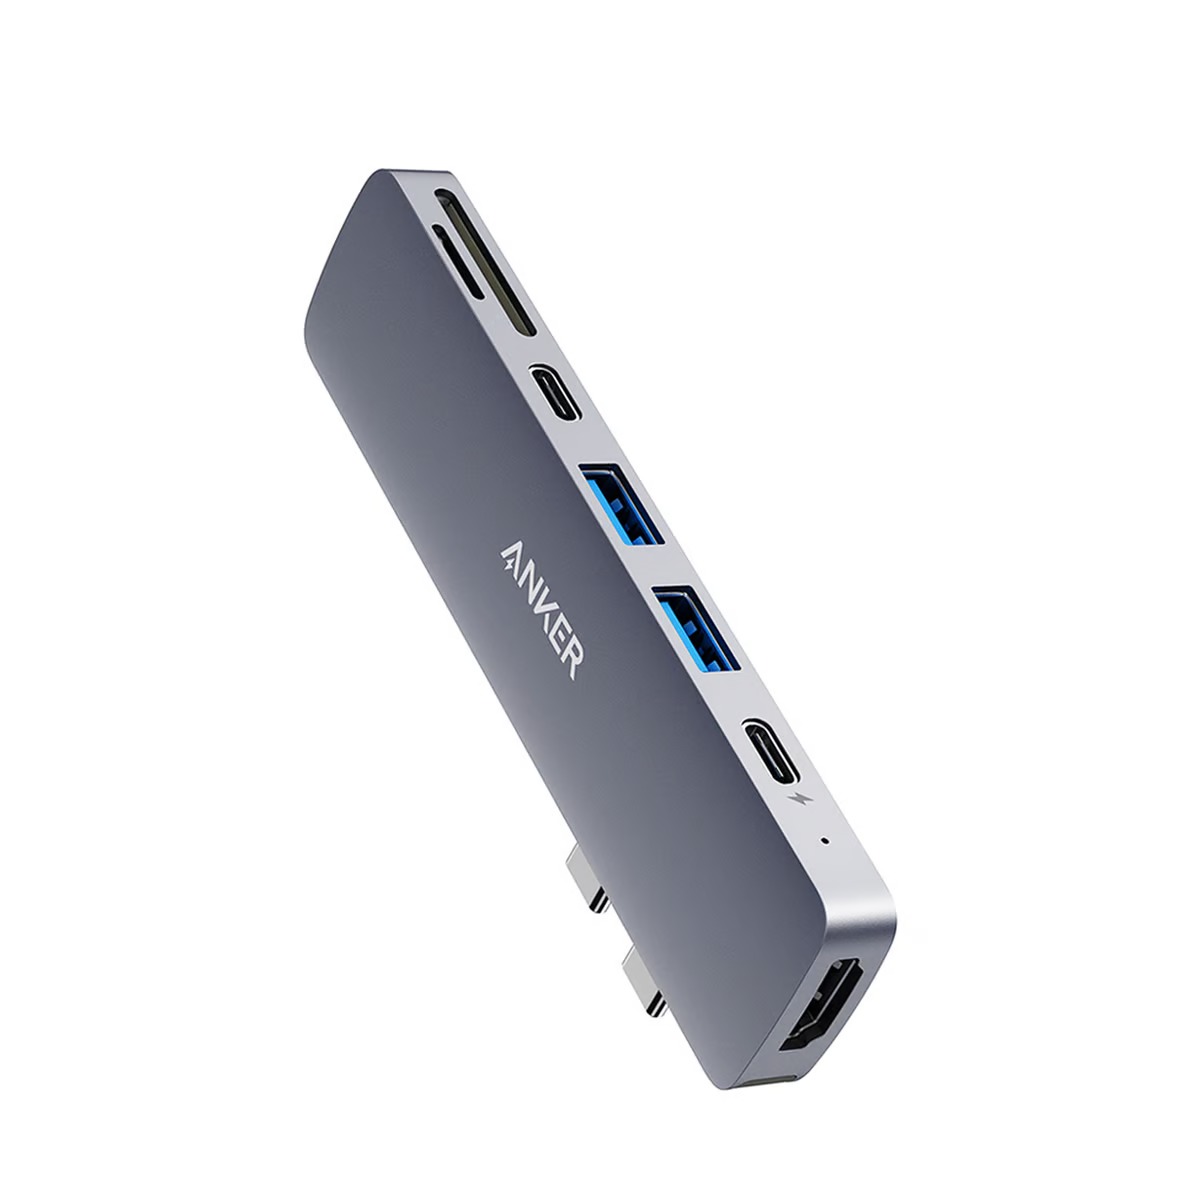 هاب 7 پورت انکر مدل Anker PowerExpand 7-in-1 USB-C A8371HA1